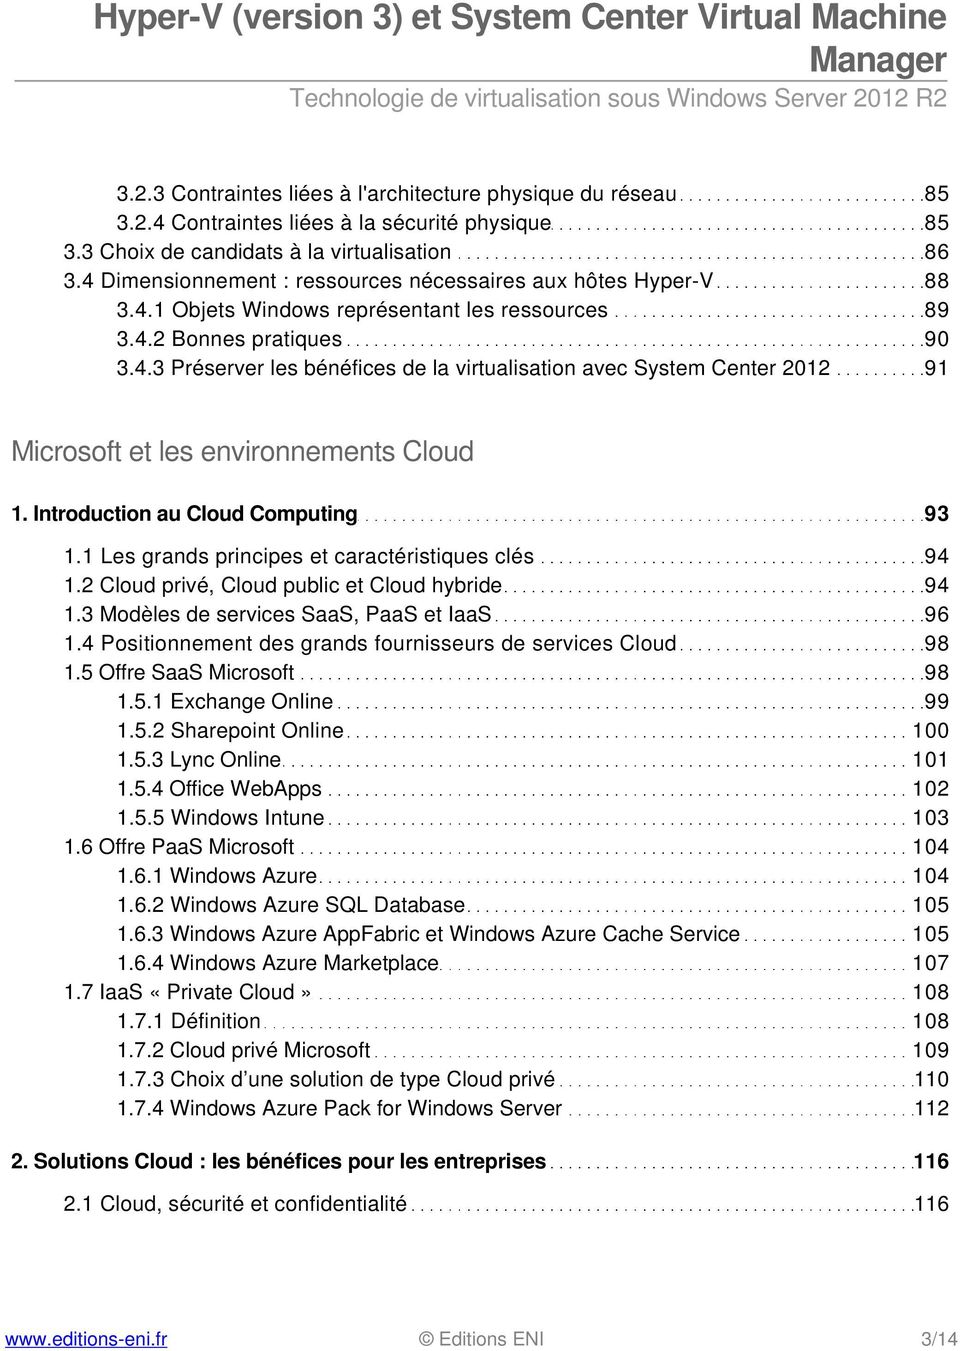 Introduction au Cloud Computing 93 1.1 Les grands principes et caractéristiques clés 94 1.2 Cloud privé, Cloud public et Cloud hybride 94 1.3 Modèles de services SaaS, PaaS et IaaS 96 1.